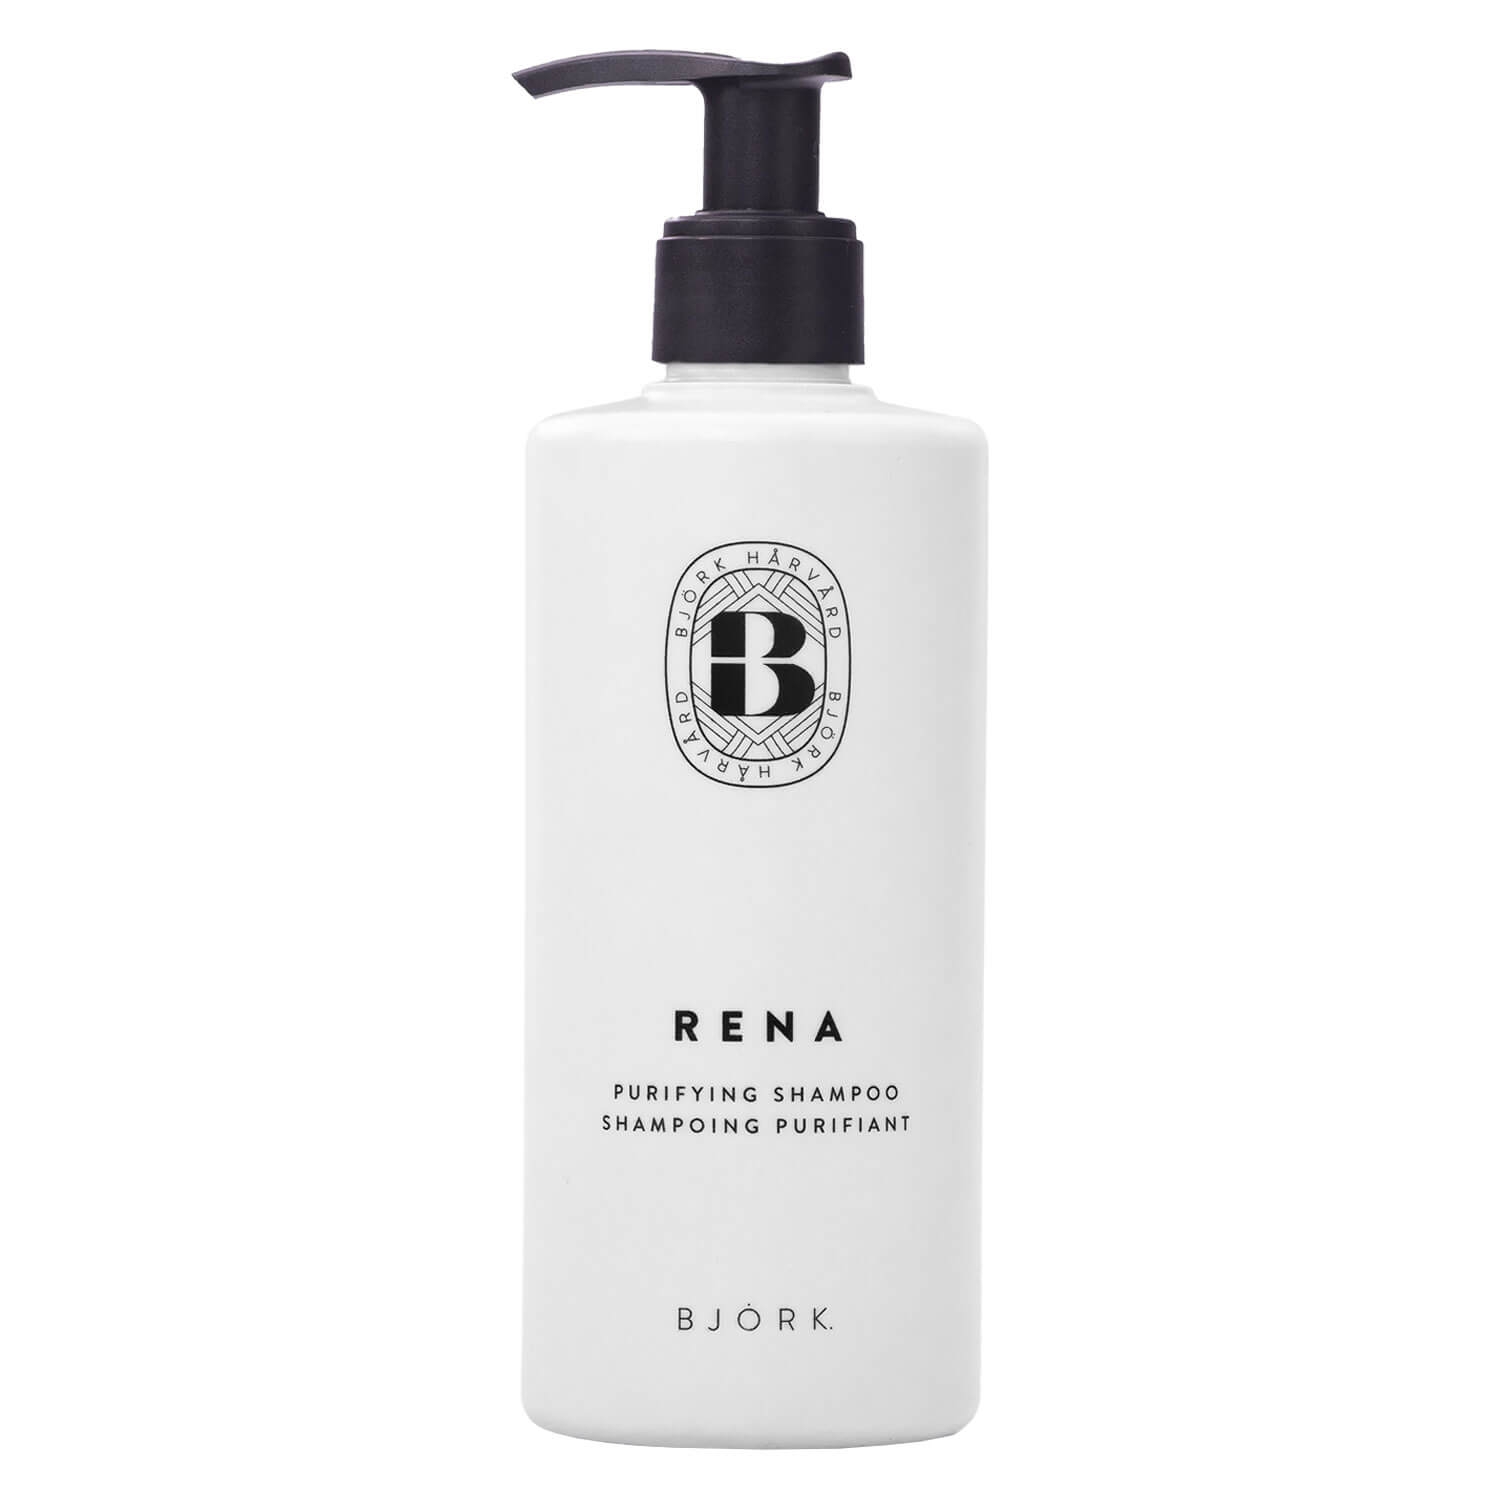 Produktbild von BJÖRK - Rena Purifying Shampoo